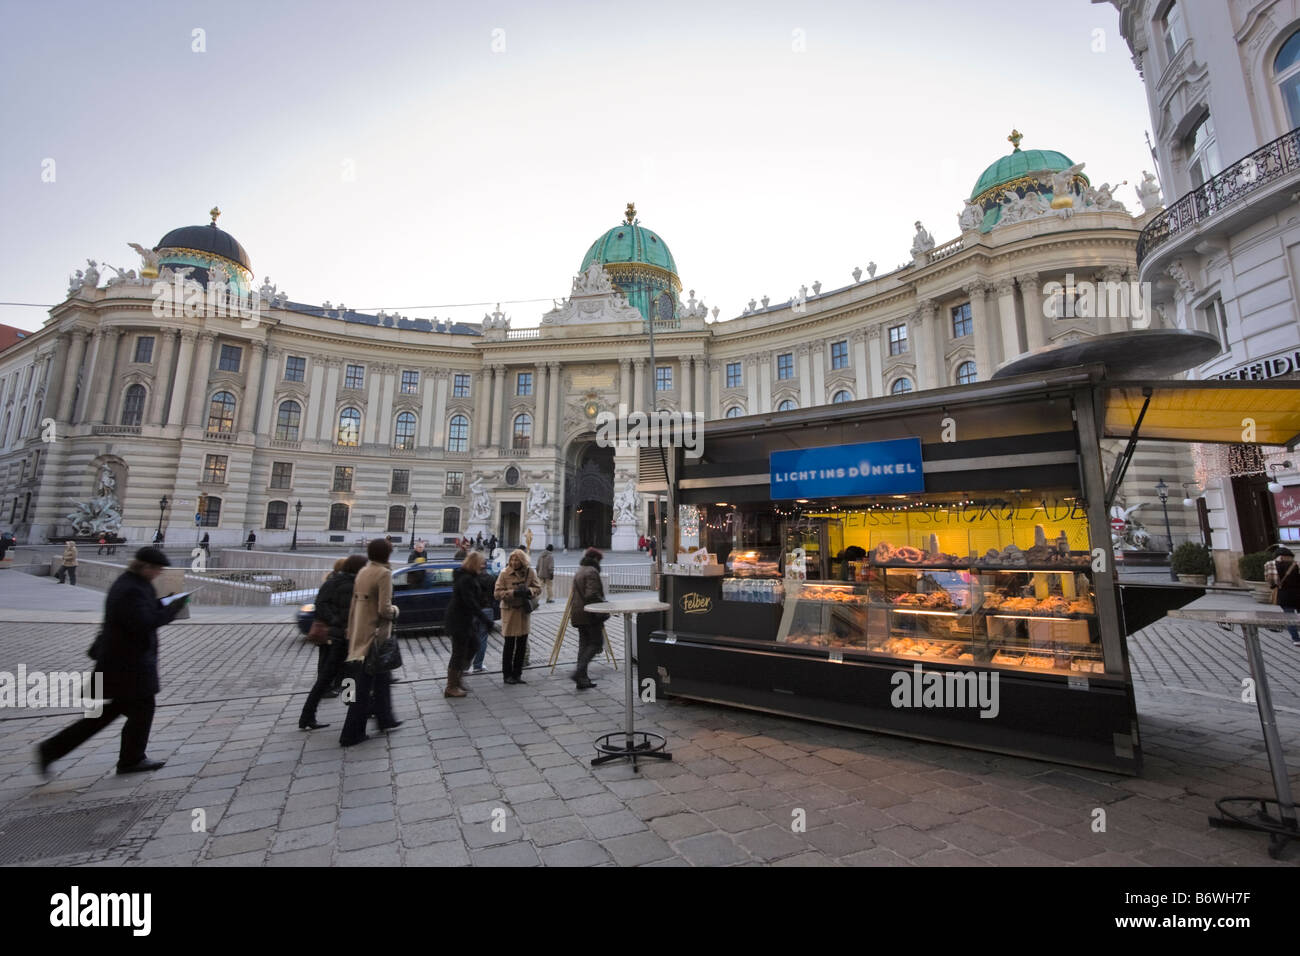 Vente kiosque donuts et les bretzels dans Michaelerplatz, Vienne, Autriche Banque D'Images